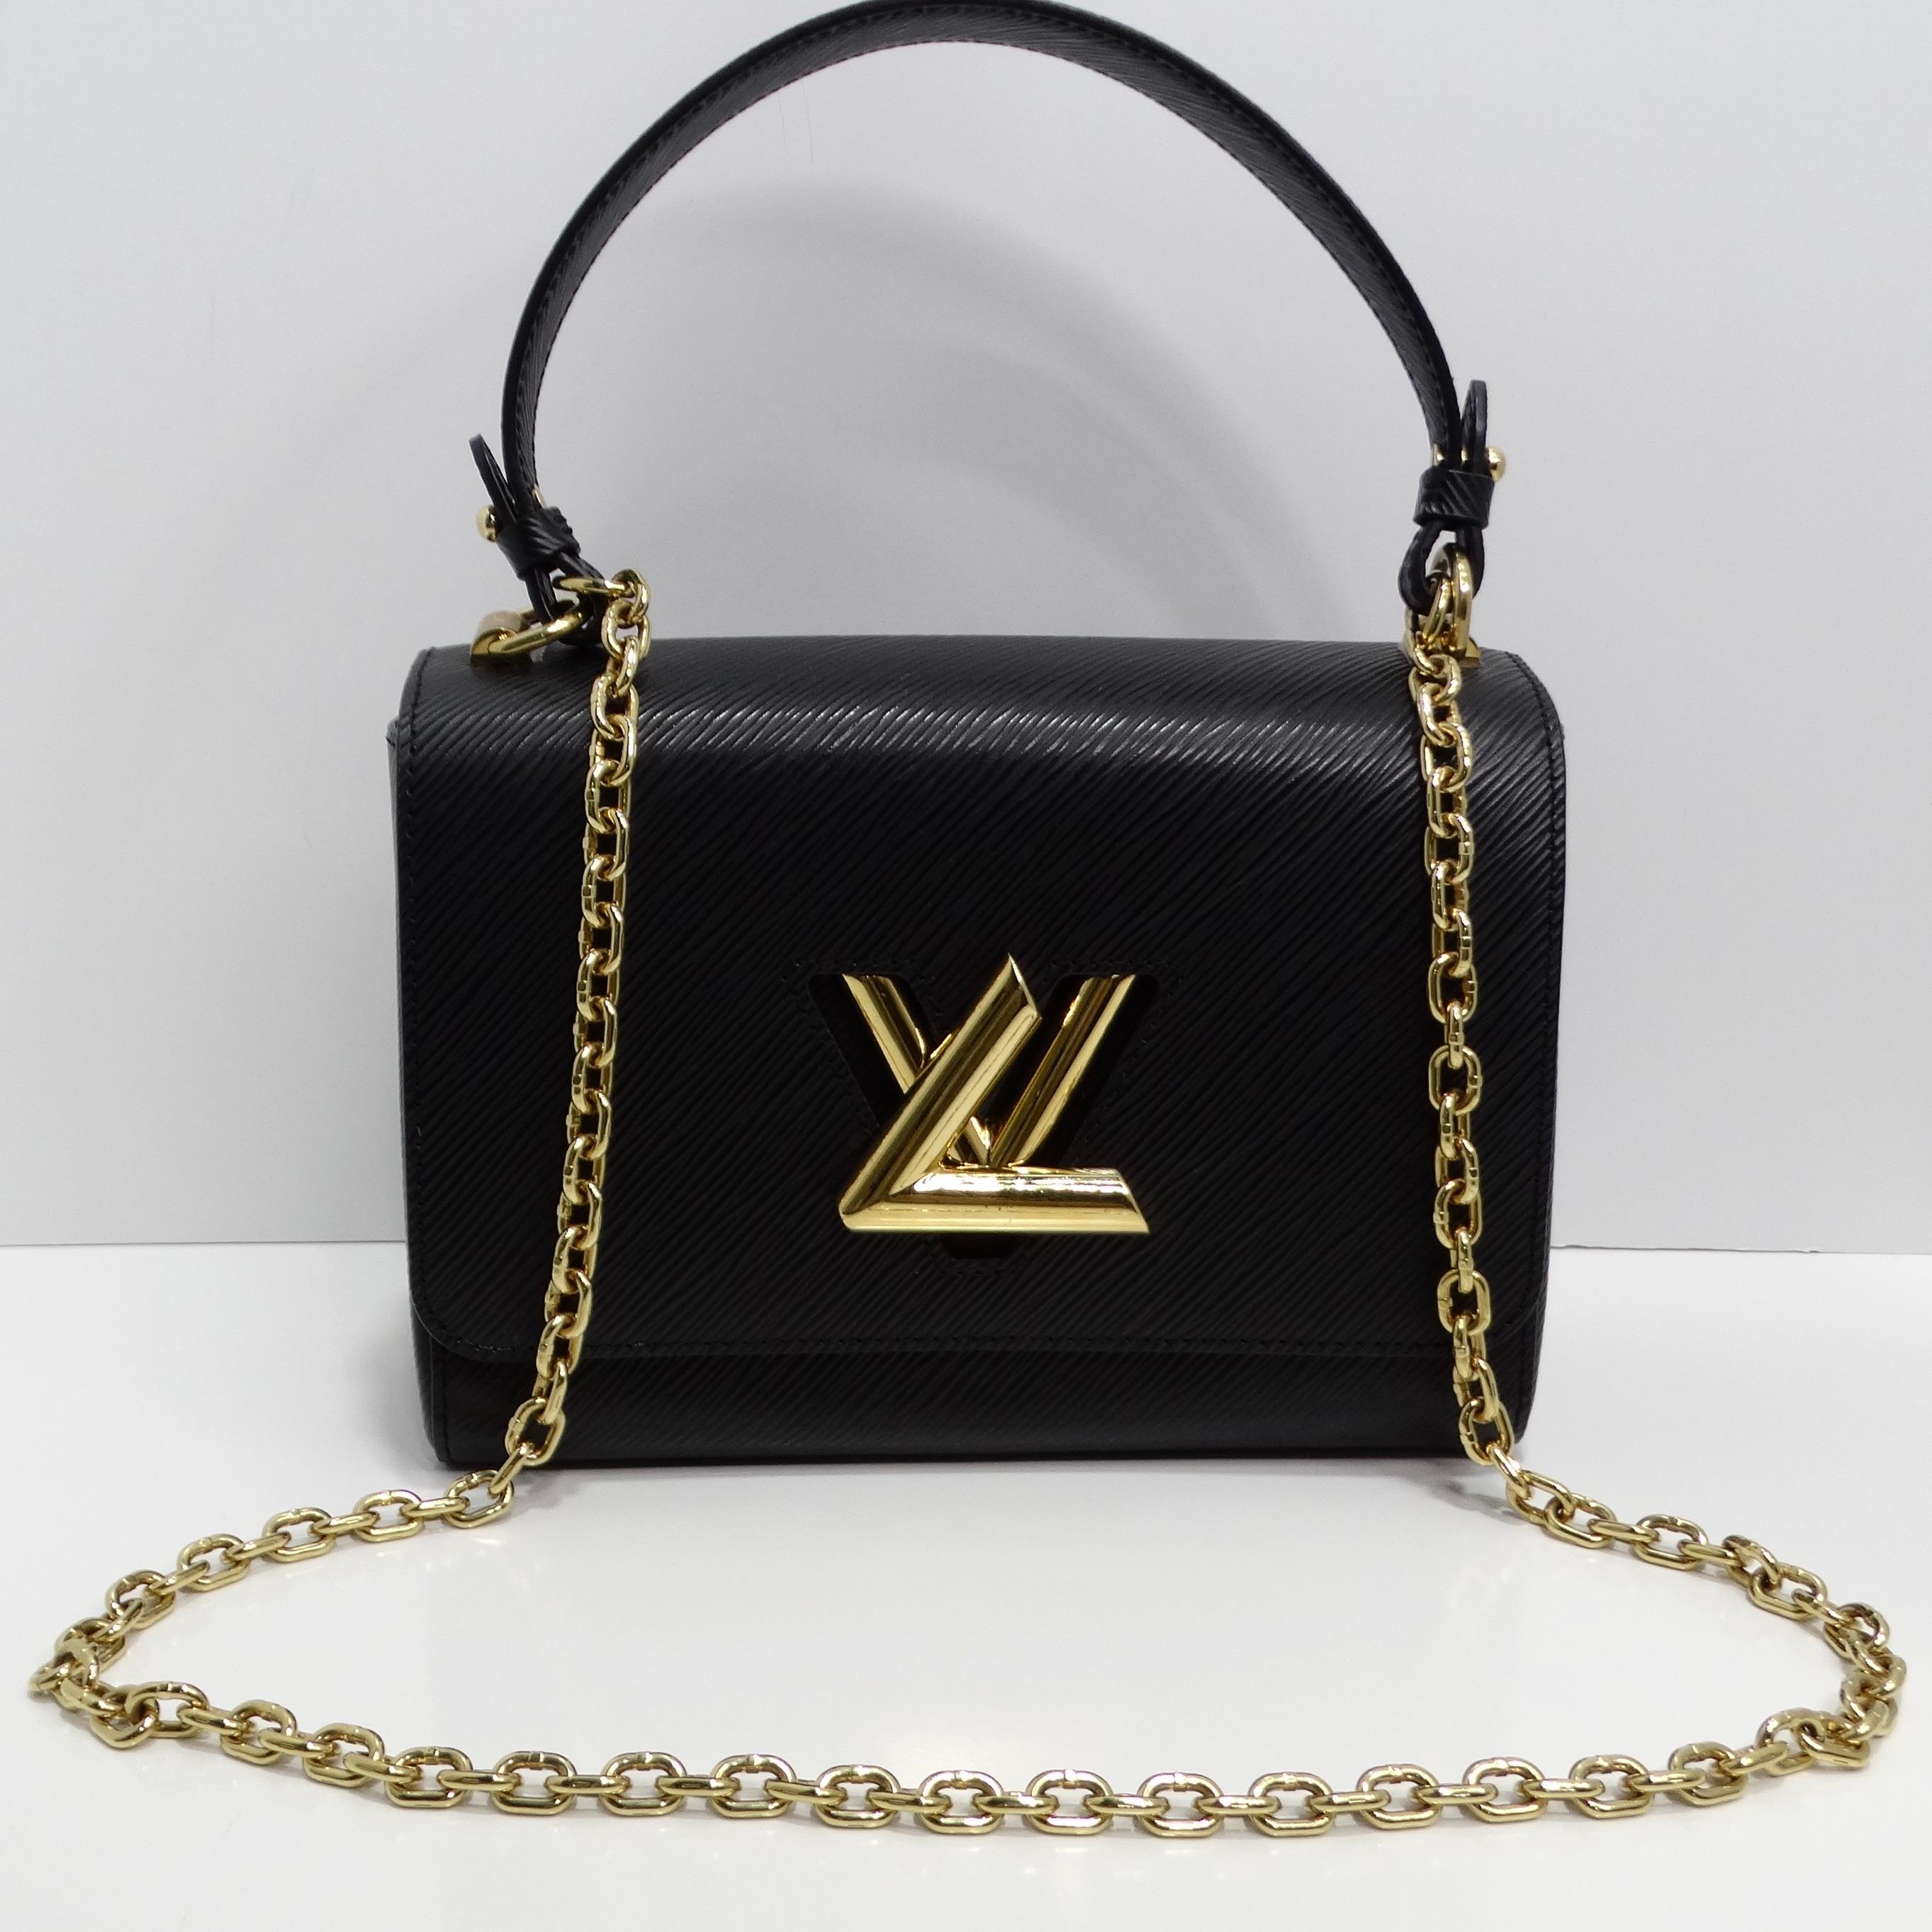 Louis Vuitton Epi Twist Top Handle Shoulder Bag est un accessoire chic et polyvalent qui allie harmonieusement style et fonctionnalité. Confectionné en cuir épi texturé dans un coloris noir classique, ce sac à bandoulière respire la sophistication